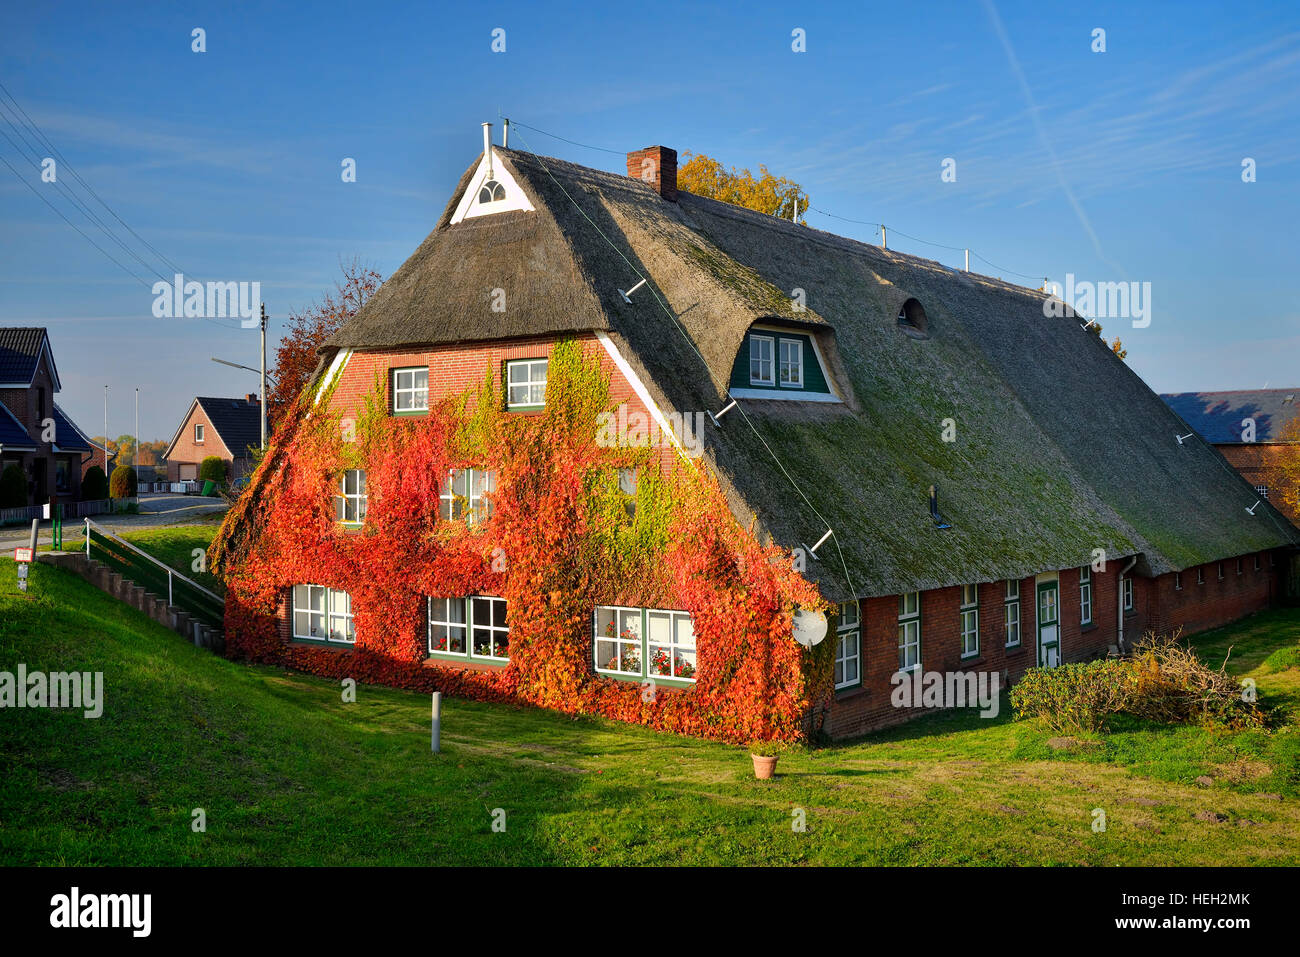 Fachwerkhaus mit berankter Fassade im Herbst in Kirchwerder, Amburgo, Deutschland, Europa Foto Stock